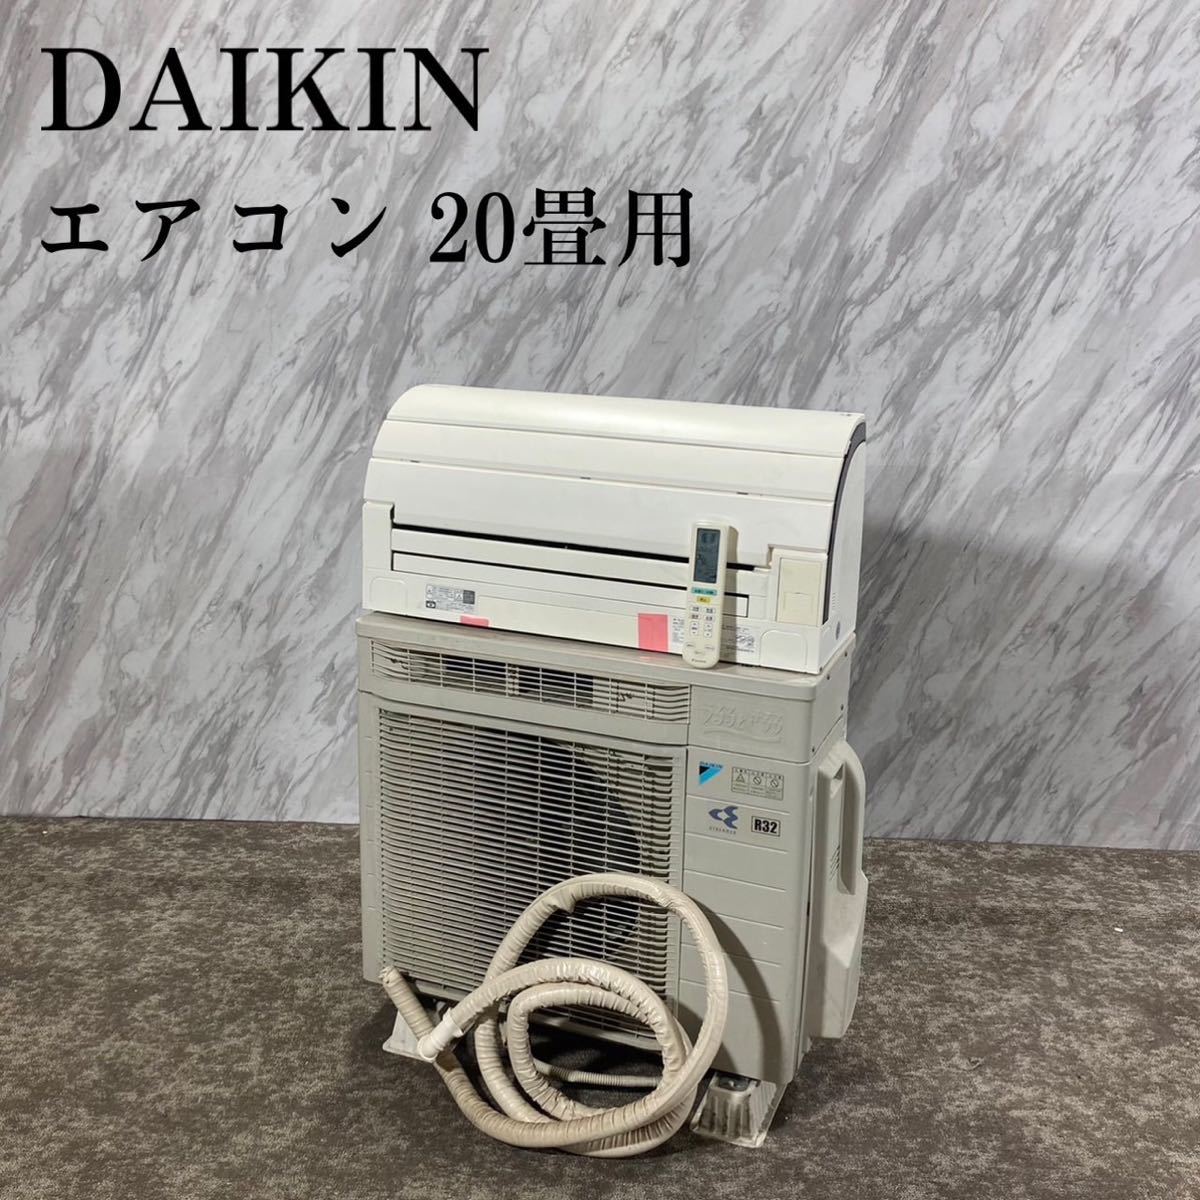 DAIKIN ダイキン エアコン AN63SRP-W 20畳用 家電 F319 | posmovi.com